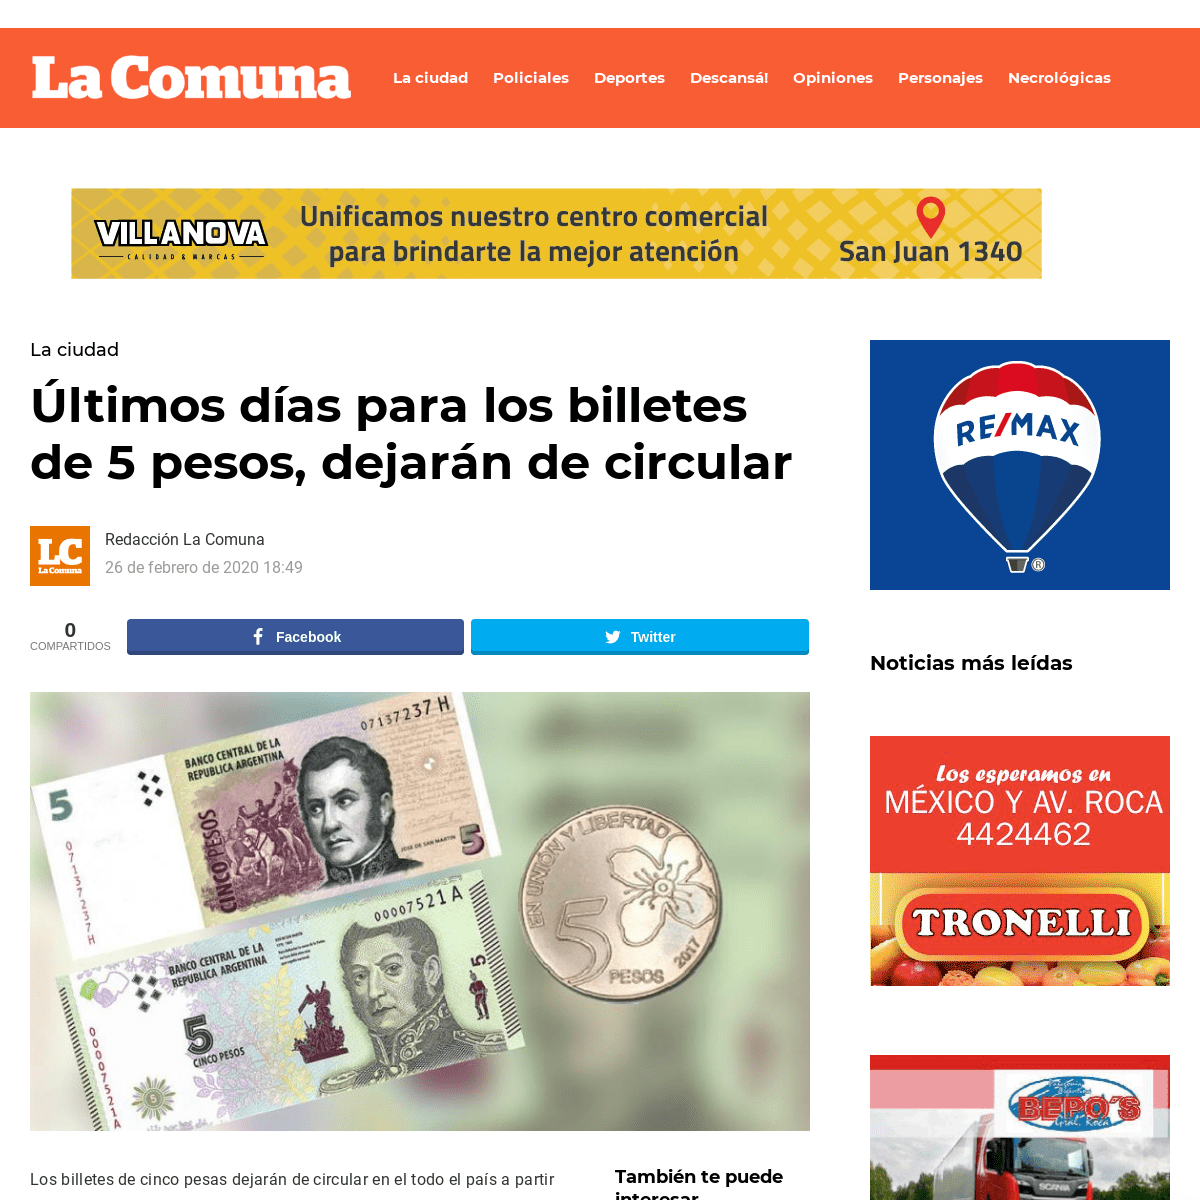 A complete backup of lacomuna.com.ar/la_ciudad/ultimos-dias-para-los-billetes-de-5-pesos-dejaran-de-circular/35426/